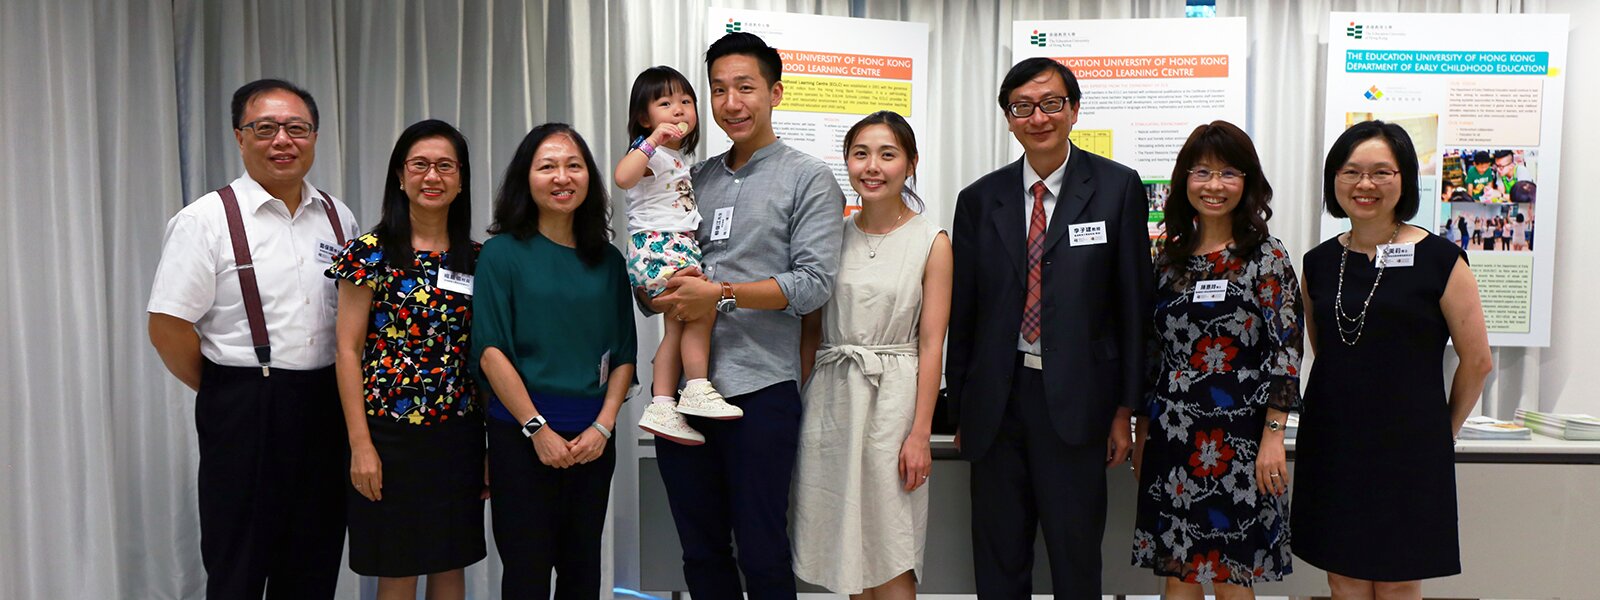 香港教育博物館舉辦 「開學禮──傳統文化展」暨「幼兒入學預備」分享會